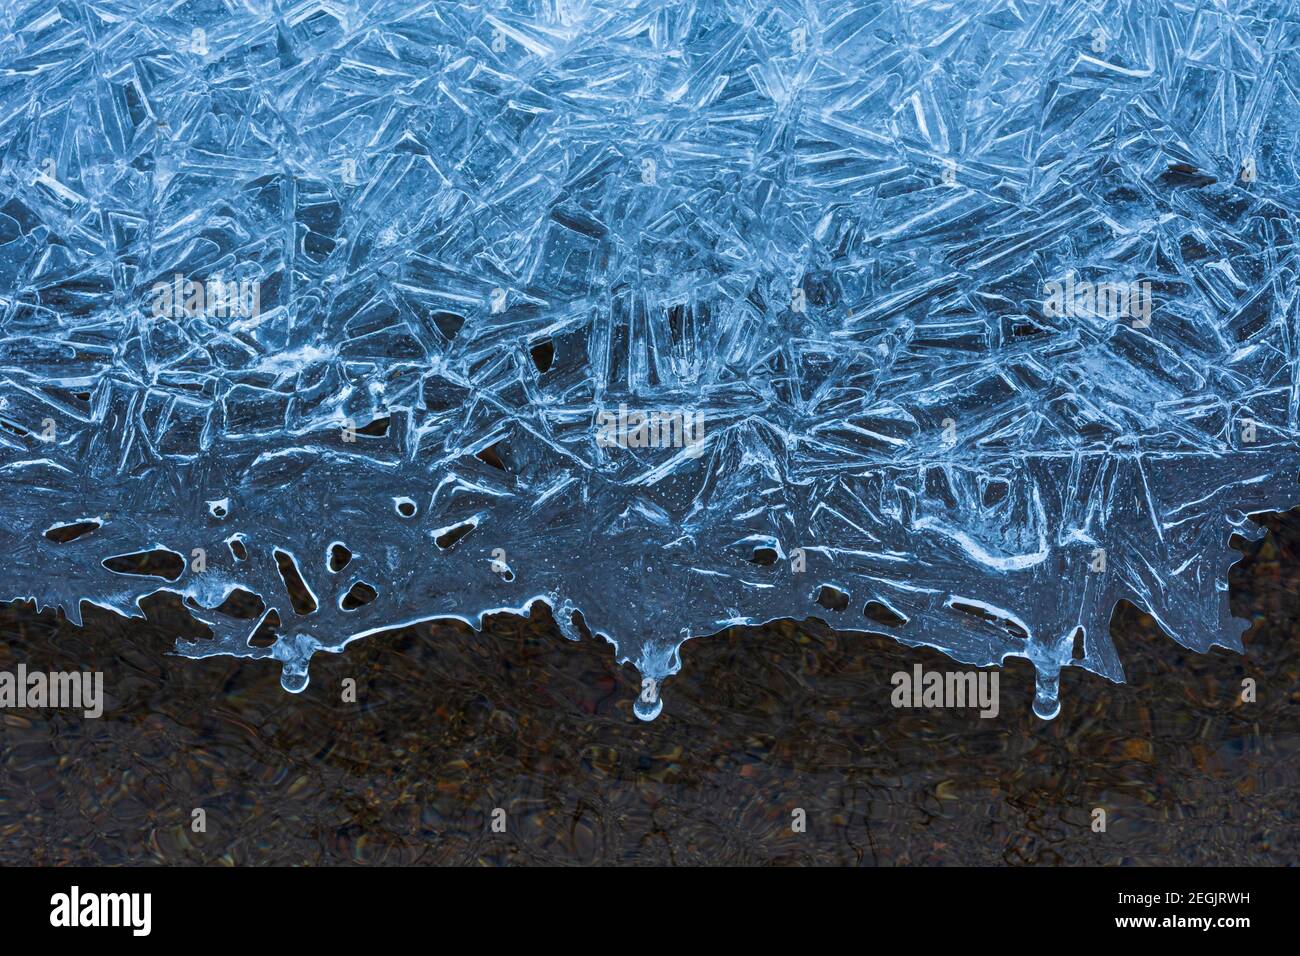 Motifs uniques formés dans la glace, avec une couche gelée au-dessus de l'eau courante claire d'East Plum Creek, Castle Rock Colorado USA. Photo prise en février. Banque D'Images